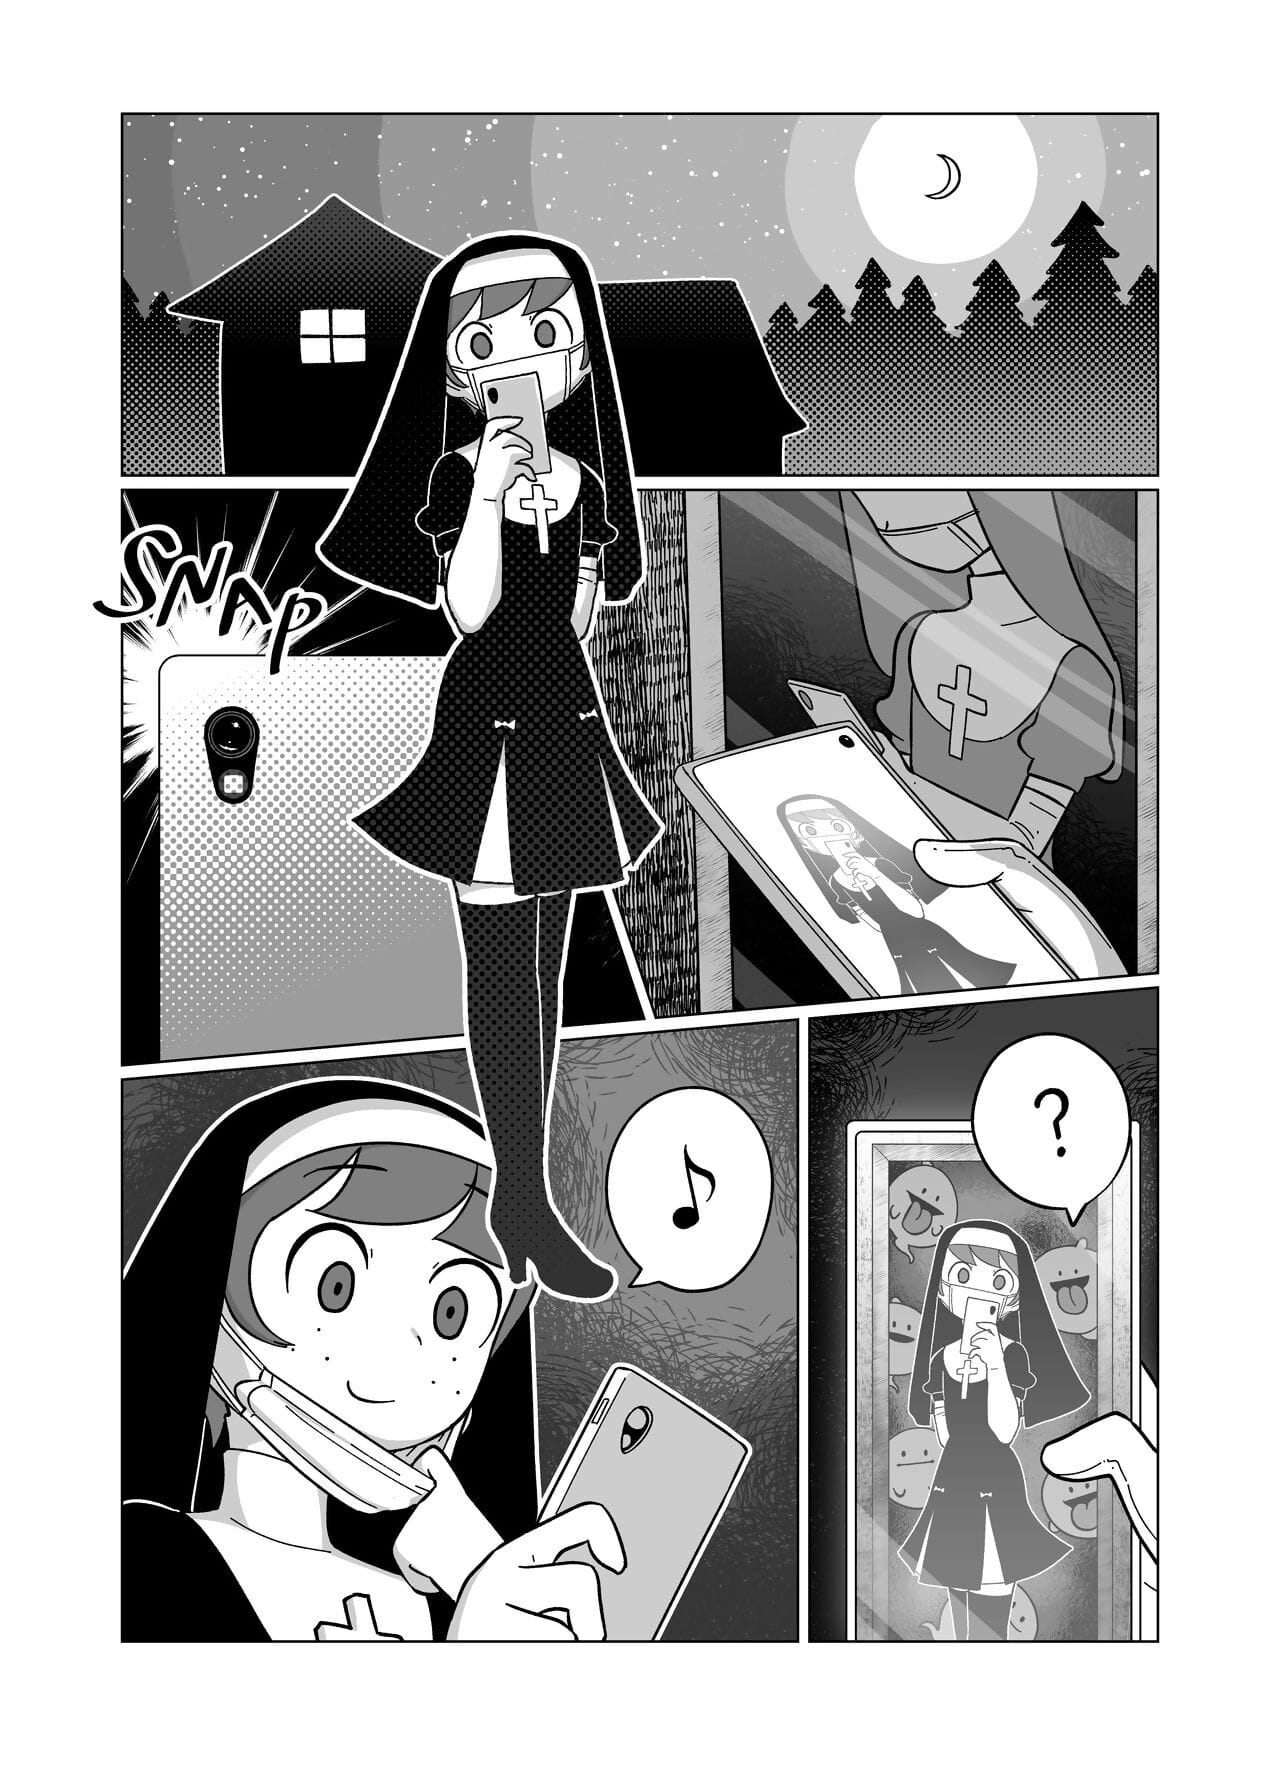 Marina et glauque combo Bande dessinée page 1